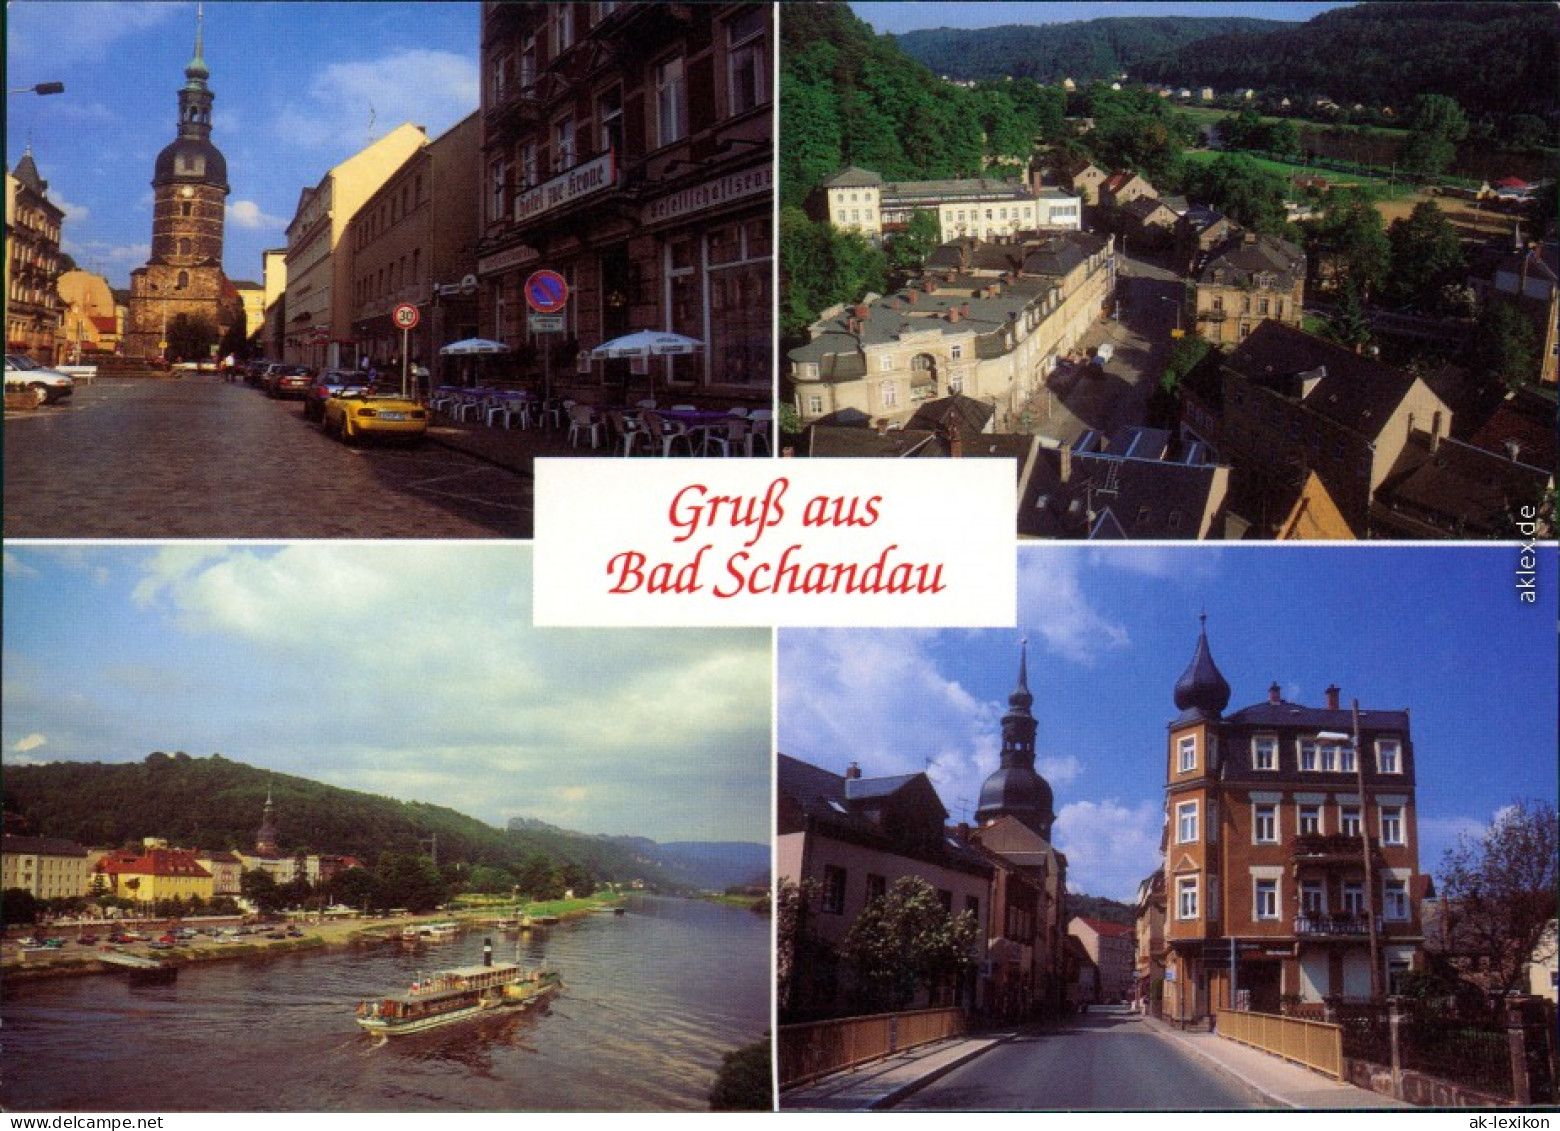 Bad Schandau Marktplatz Mit Kirche, Ansicht Mit Raddampfer 2000 - Bad Schandau